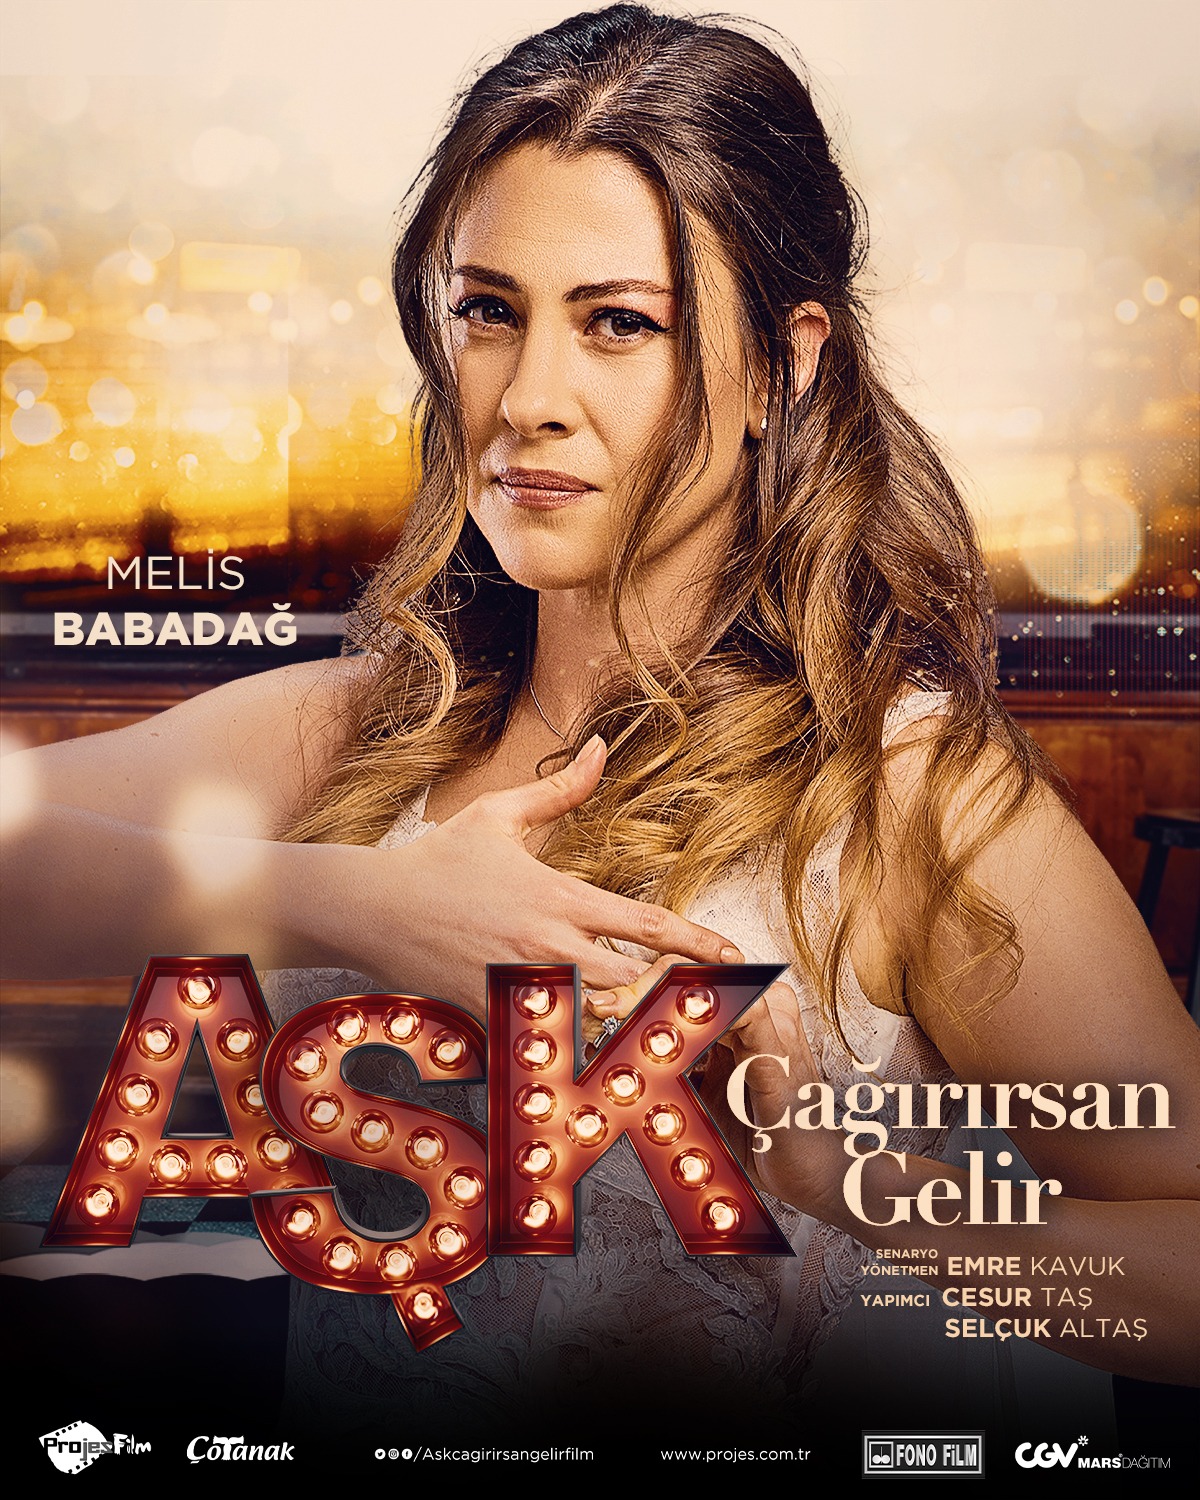 Kerem Cem'in yeni filmi "Aşk Çağırırsan Gelir" 6 Mayıs'ta vizyonda!